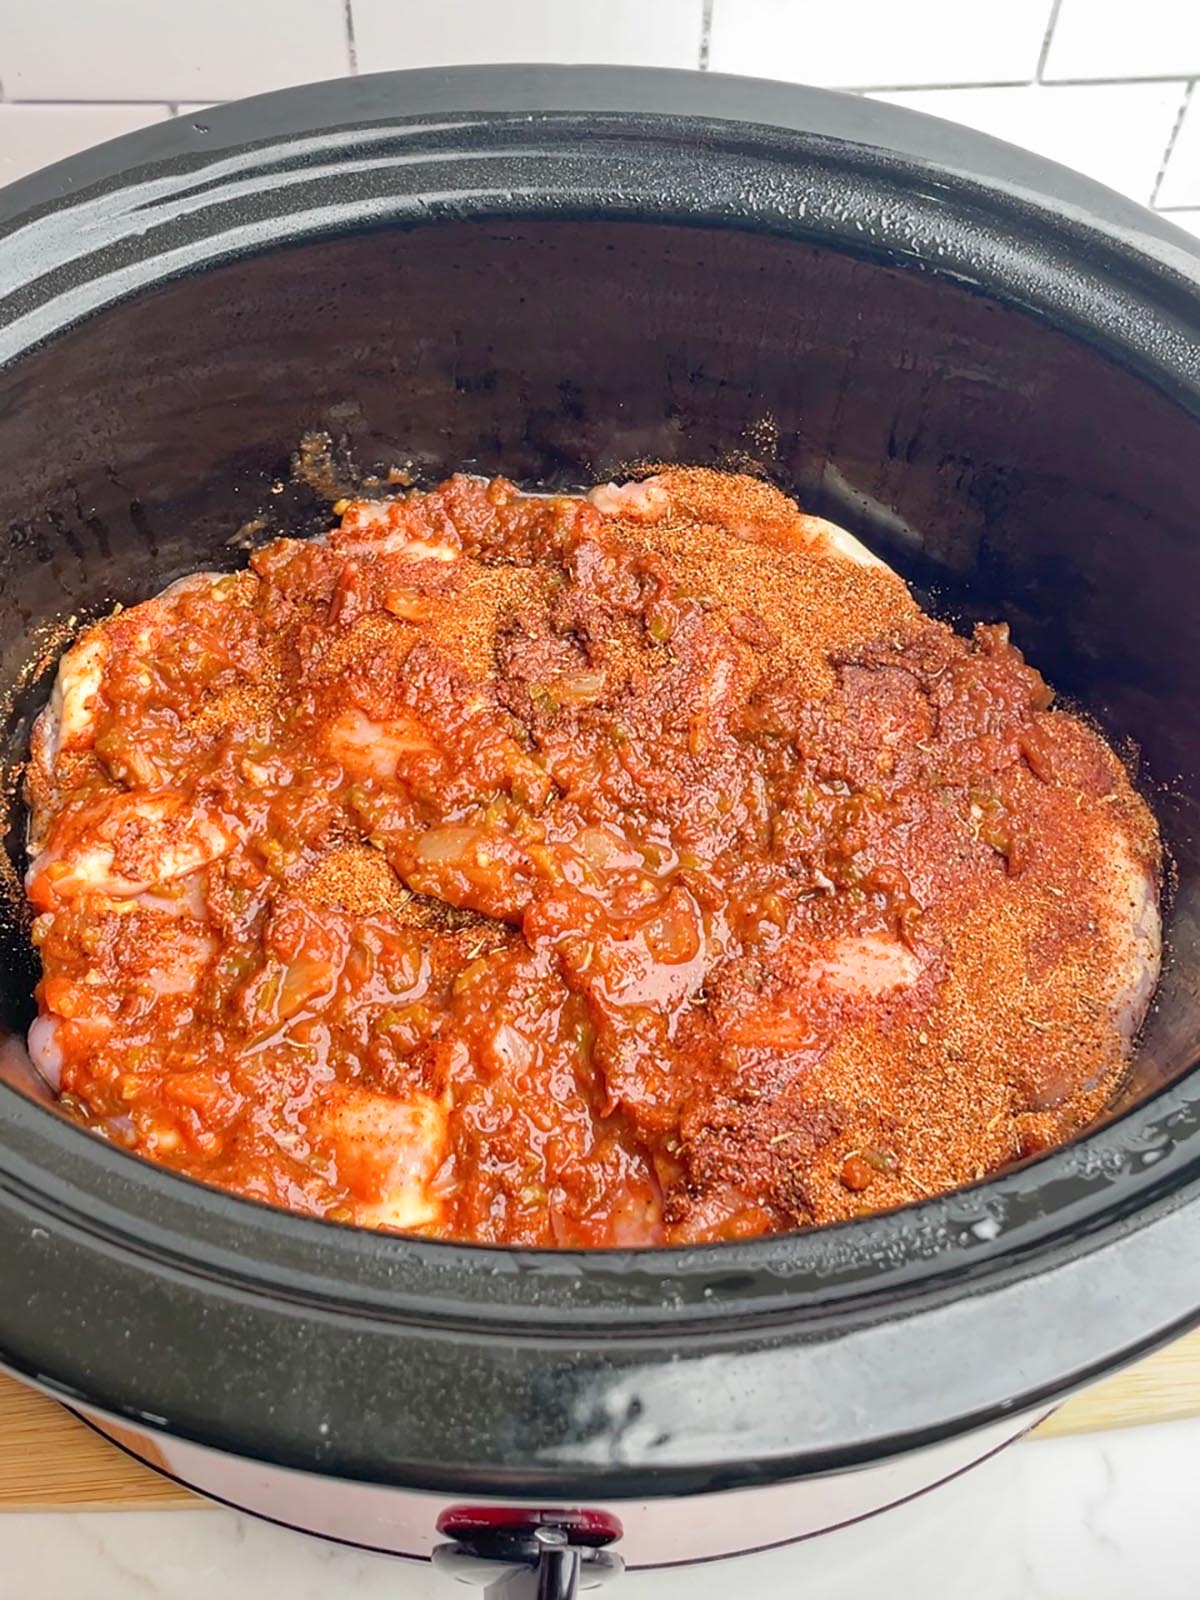 uncooked crock pot salsa chicken in black slow cooker